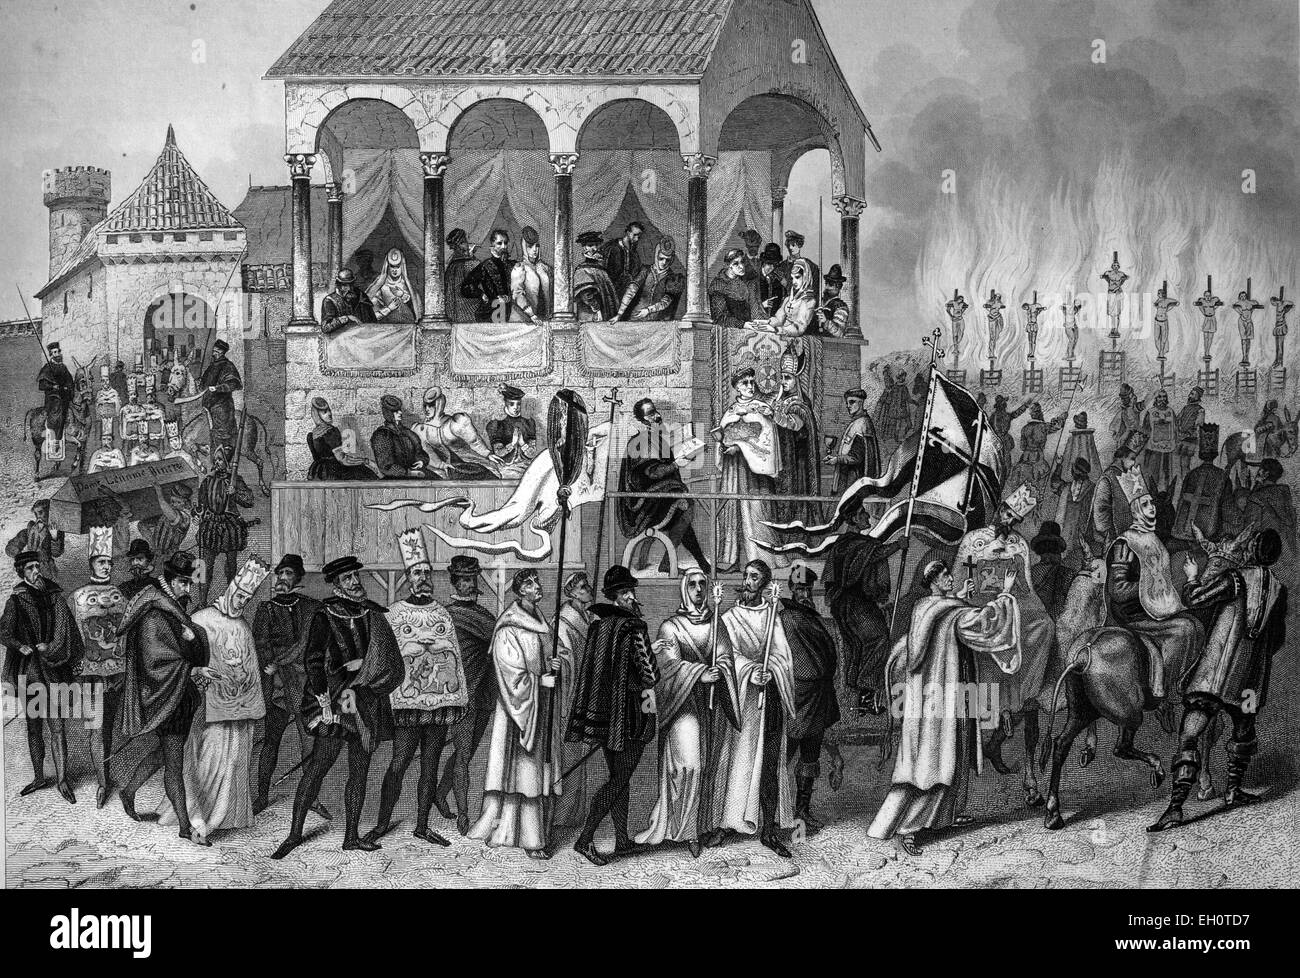 Auto da fe espagnol, d'exécution d'une peine de l'Inquisition, l'Espagne, l'illustration historique Banque D'Images